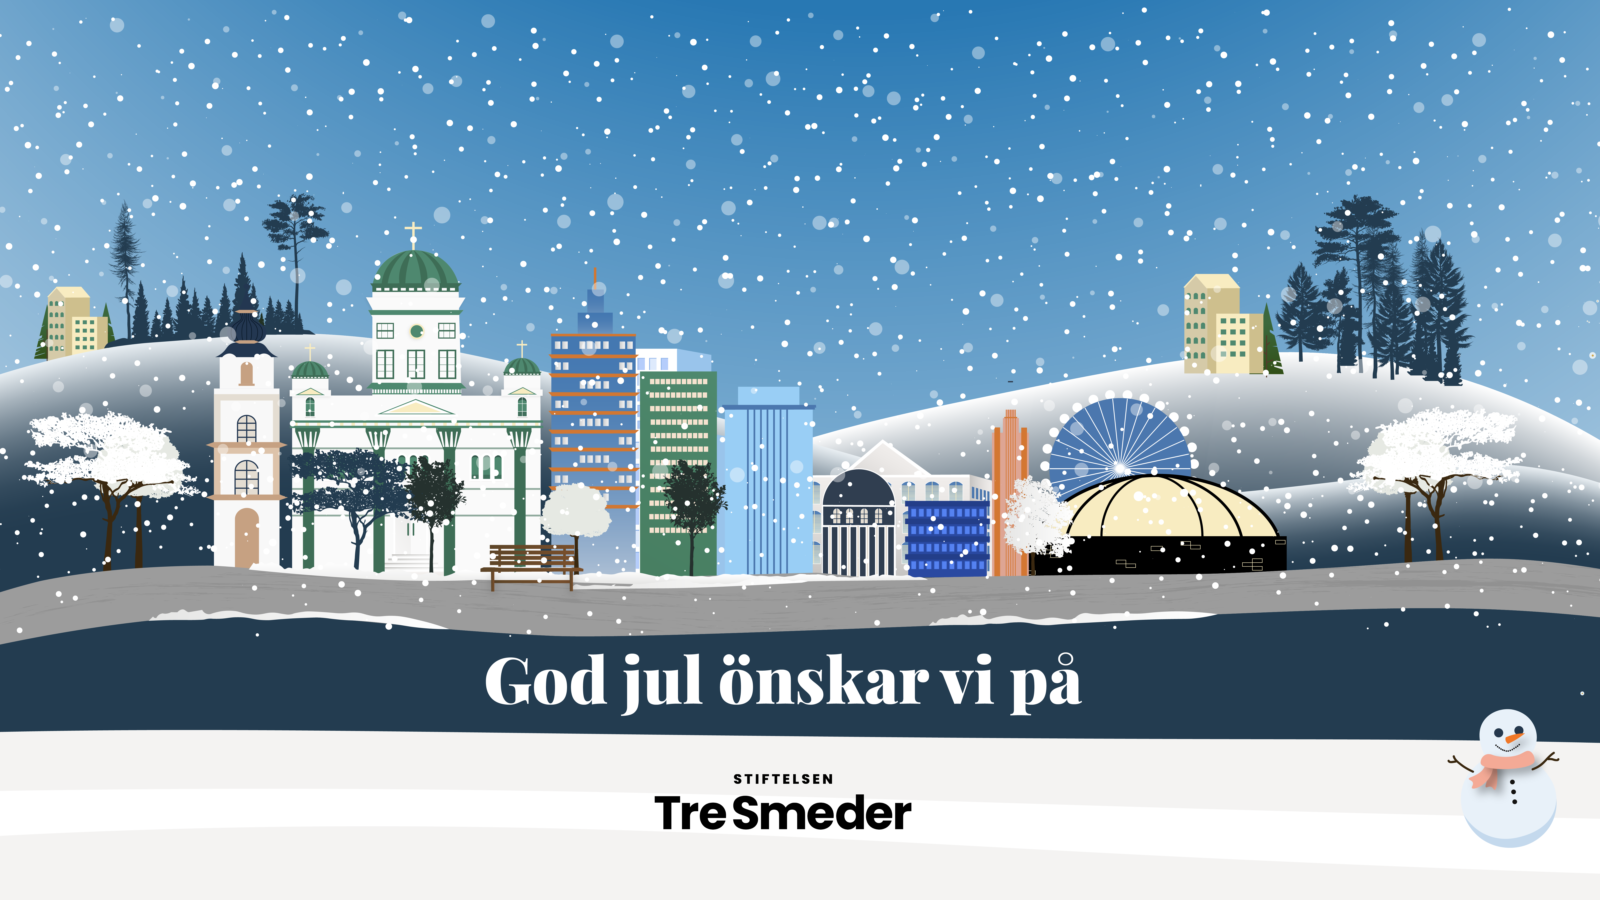 Illustrerad bild av Helsingfors i vinterskrud samt en önskan om en god jul från Stiftelsen Tre Smeder